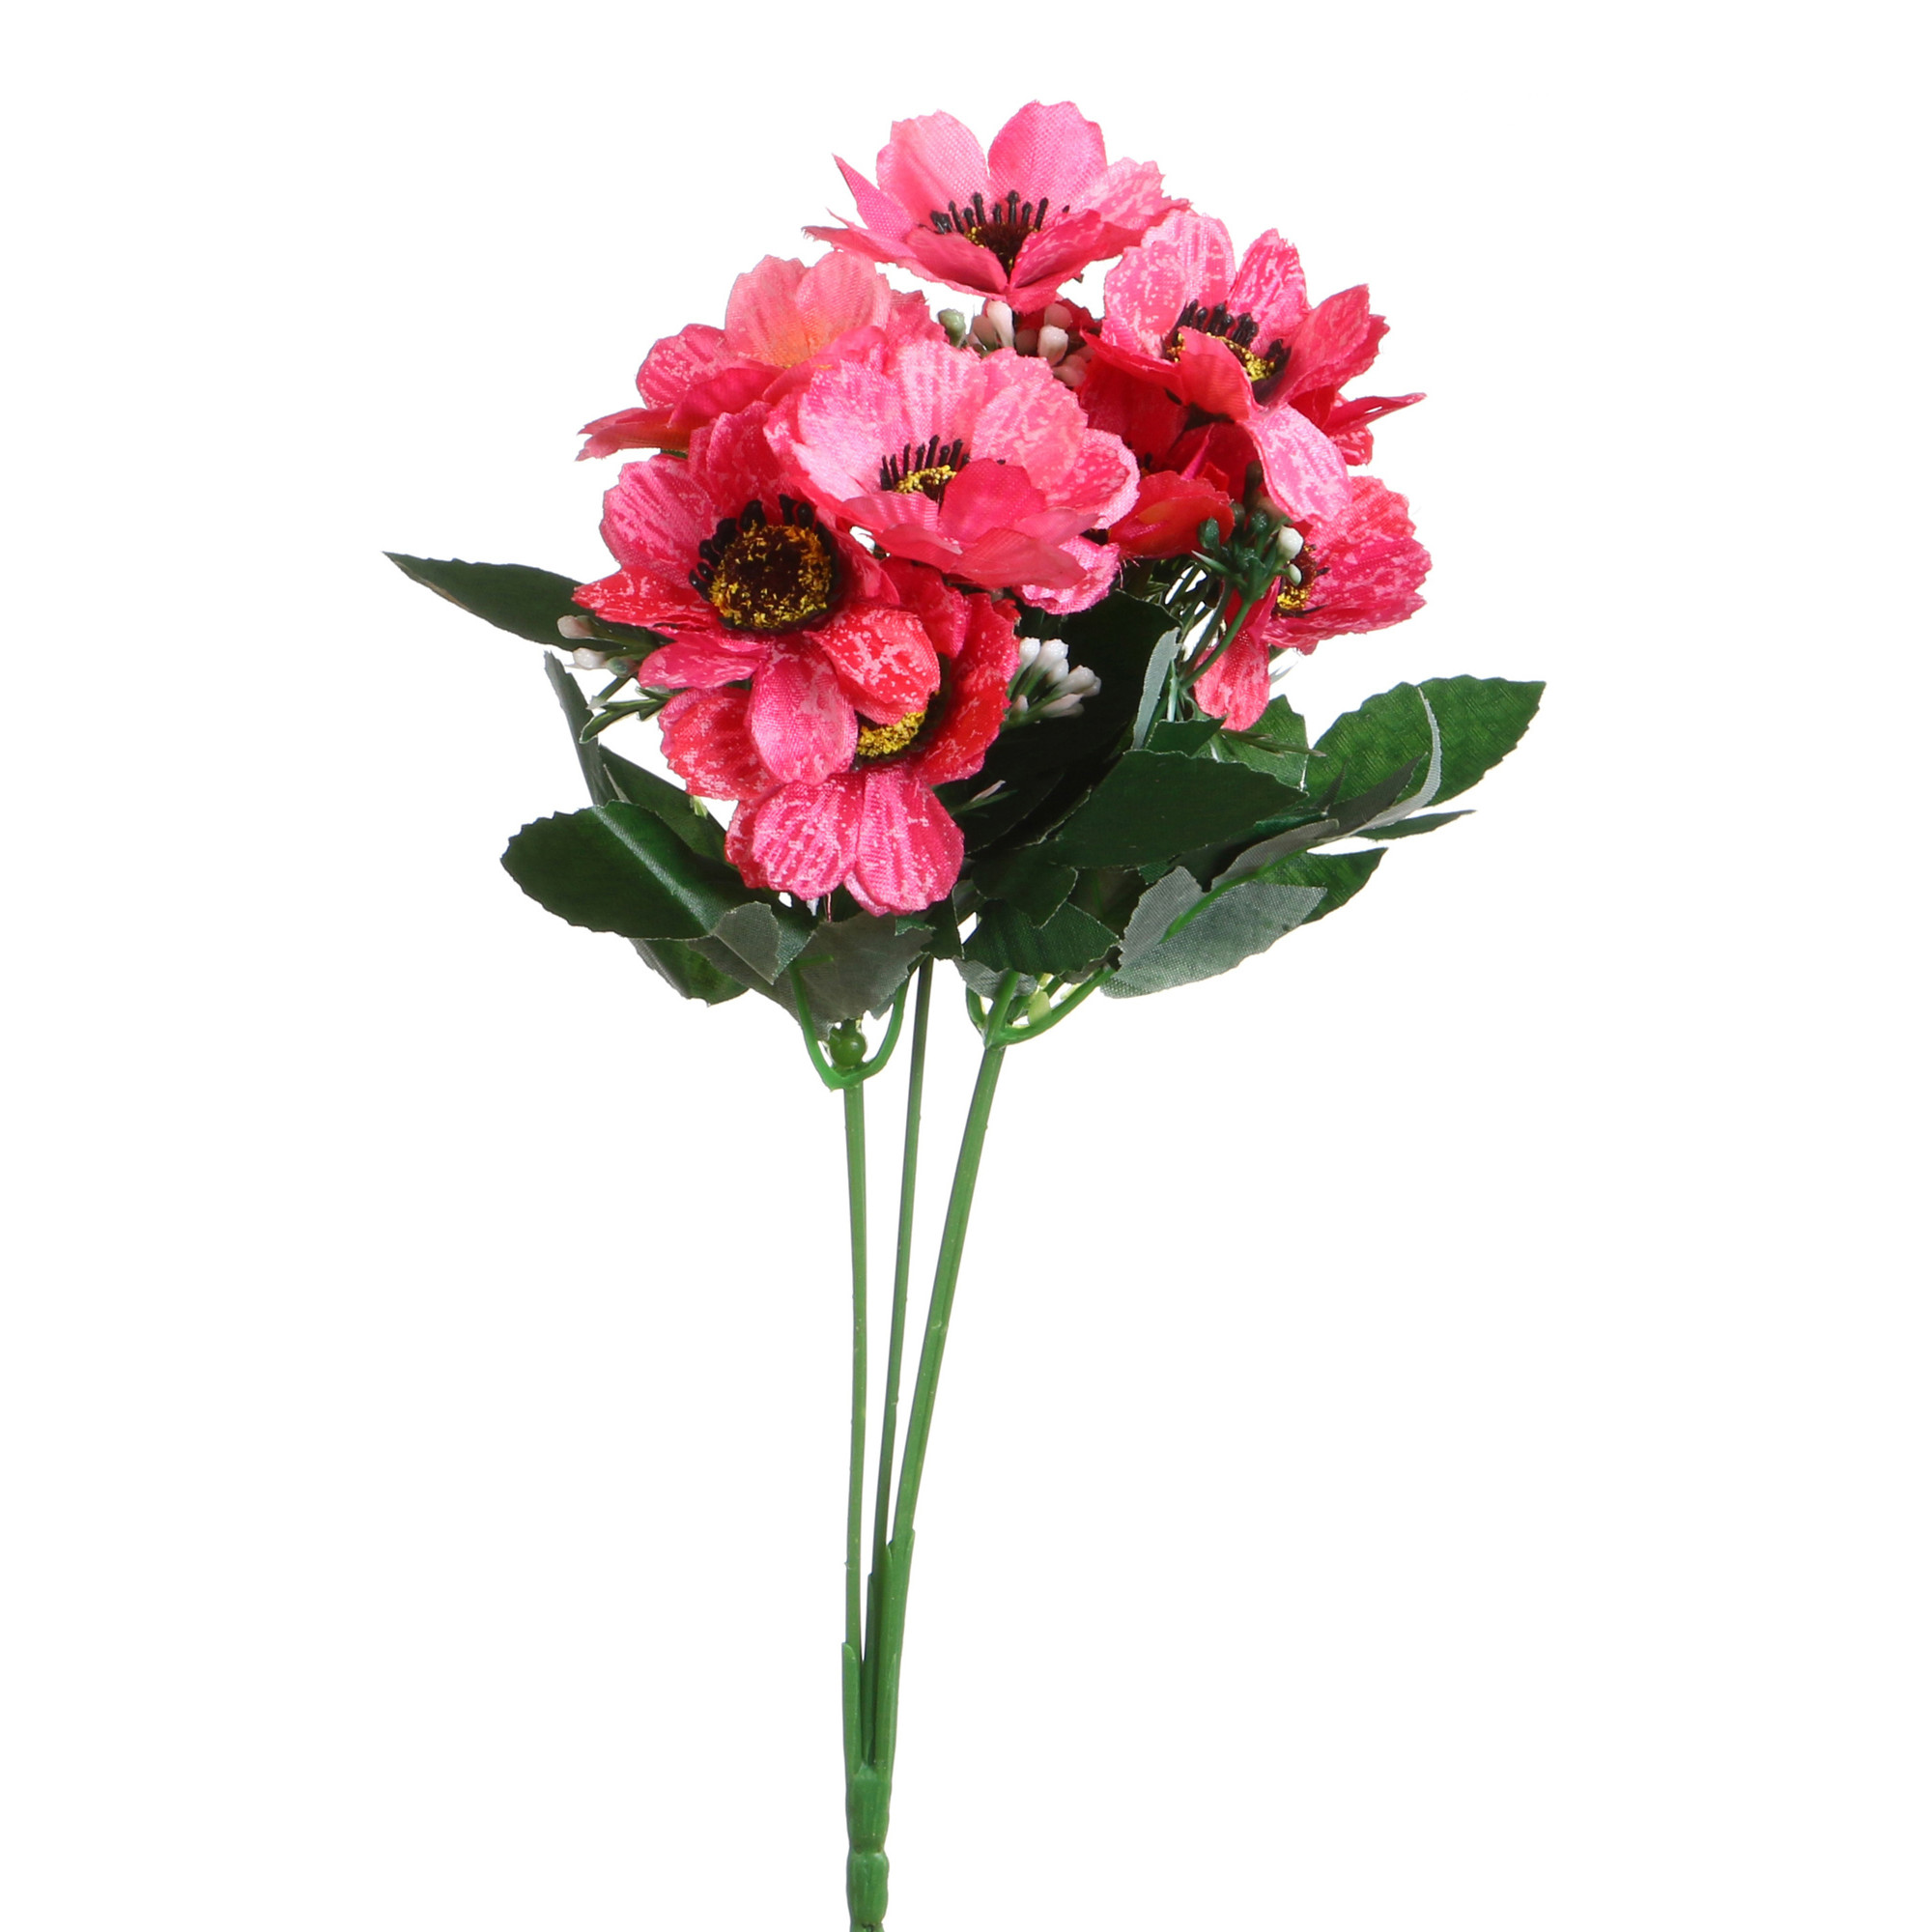 Искусственный цветок Ondreea  (34 см), размер 34 см arm264944 Искусственный цветок Ondreea  (34 см) - фото 1